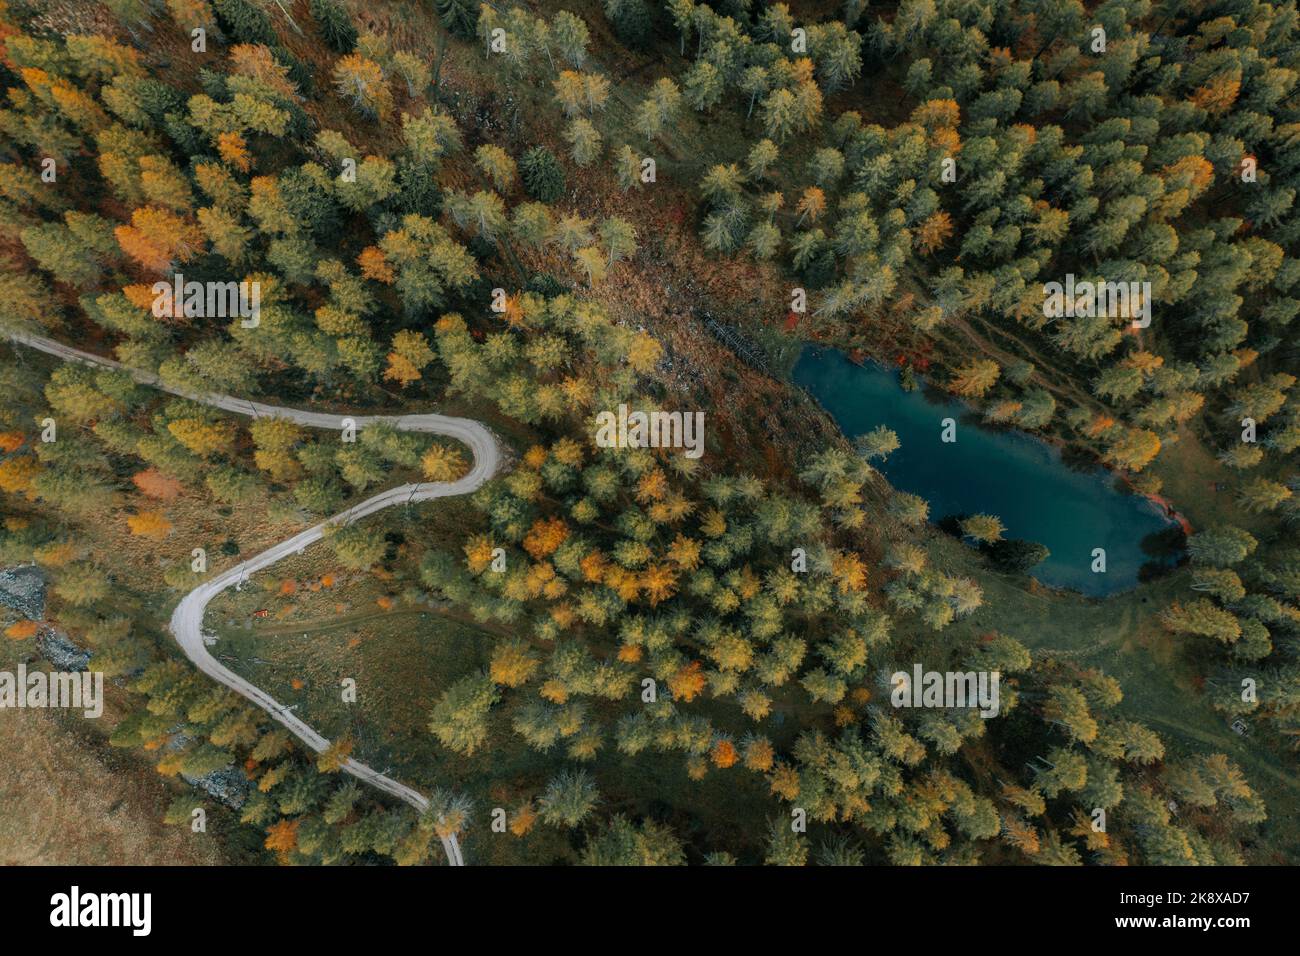 Eine Straße im Wald in der Herbstzeit. Kurvige Straße in einem bunten Wald und direkt neben einem See. Stock Photo